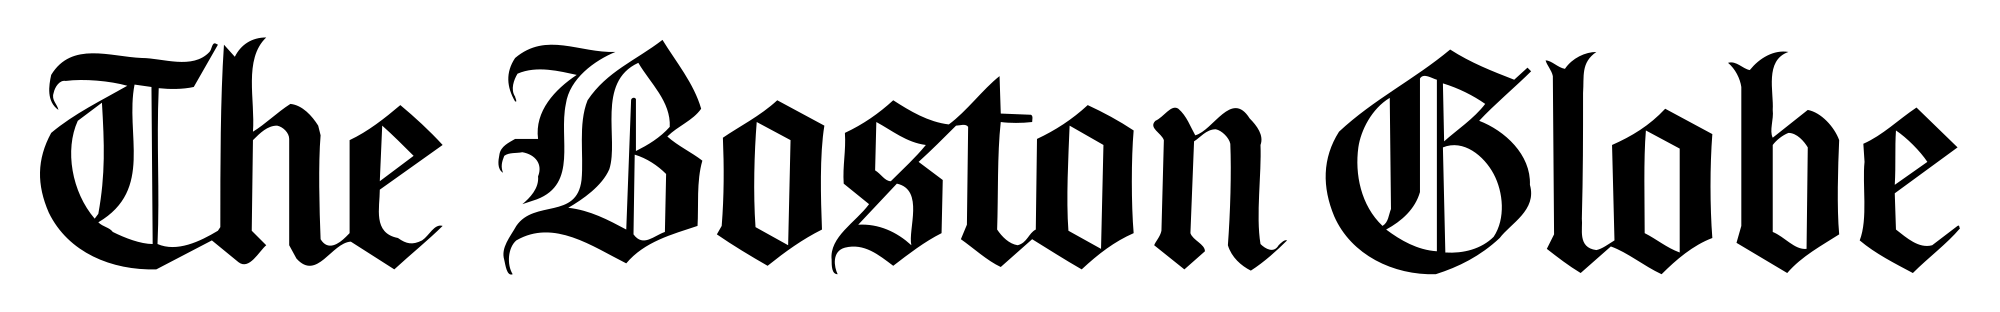 Boston Globe Logo - The Boston Globe.svg